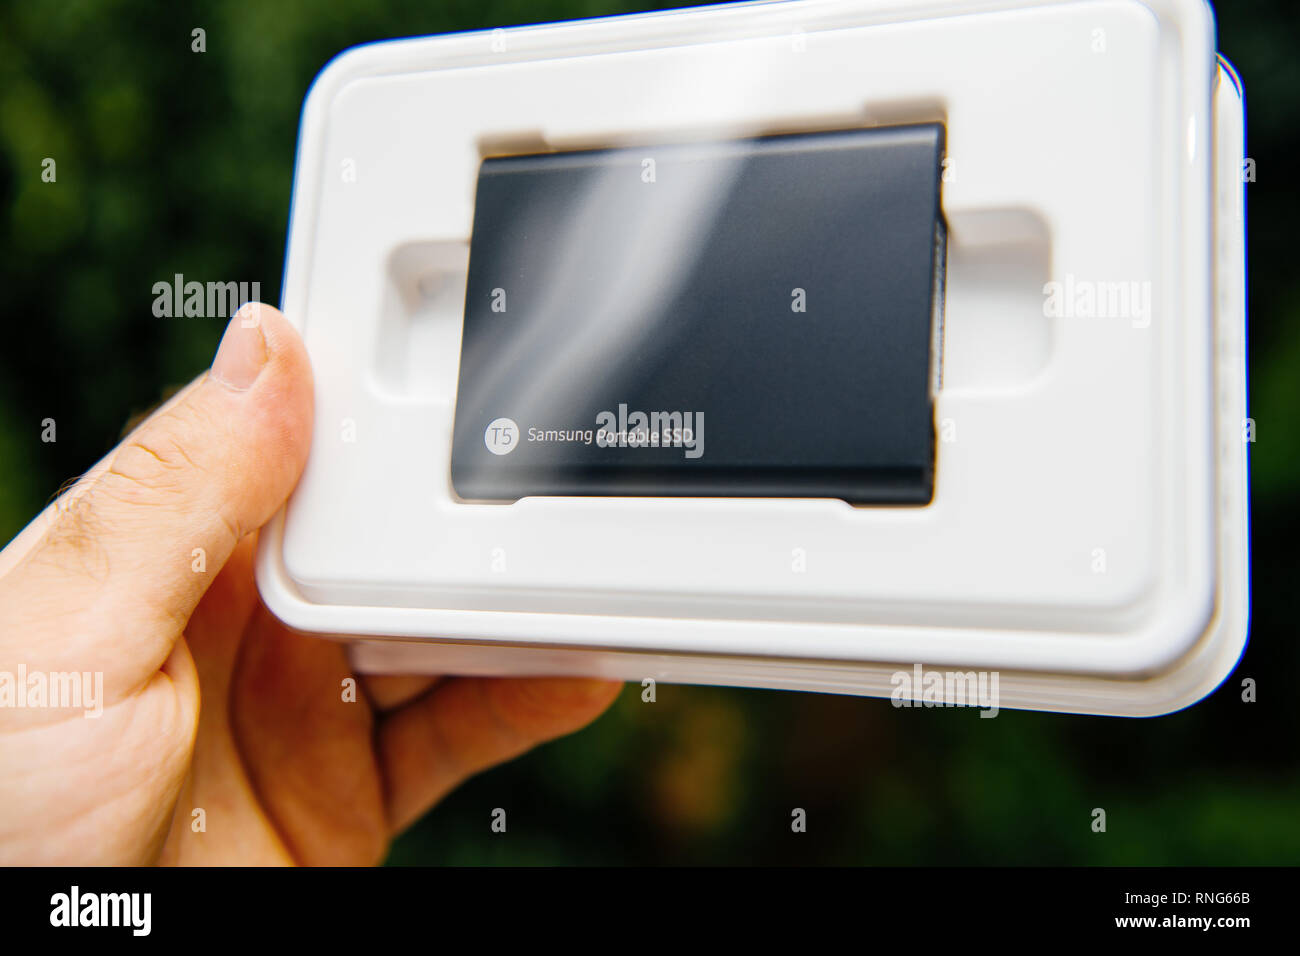 PARIS, FRANCE - Aug 14, 2018 : hand holding Samsung T5 SSD Portable 2 To de disque dur externe disque avec les vitesses de lecture et d'écriture élevée contre un arrière-plan vert unboxing testing Banque D'Images